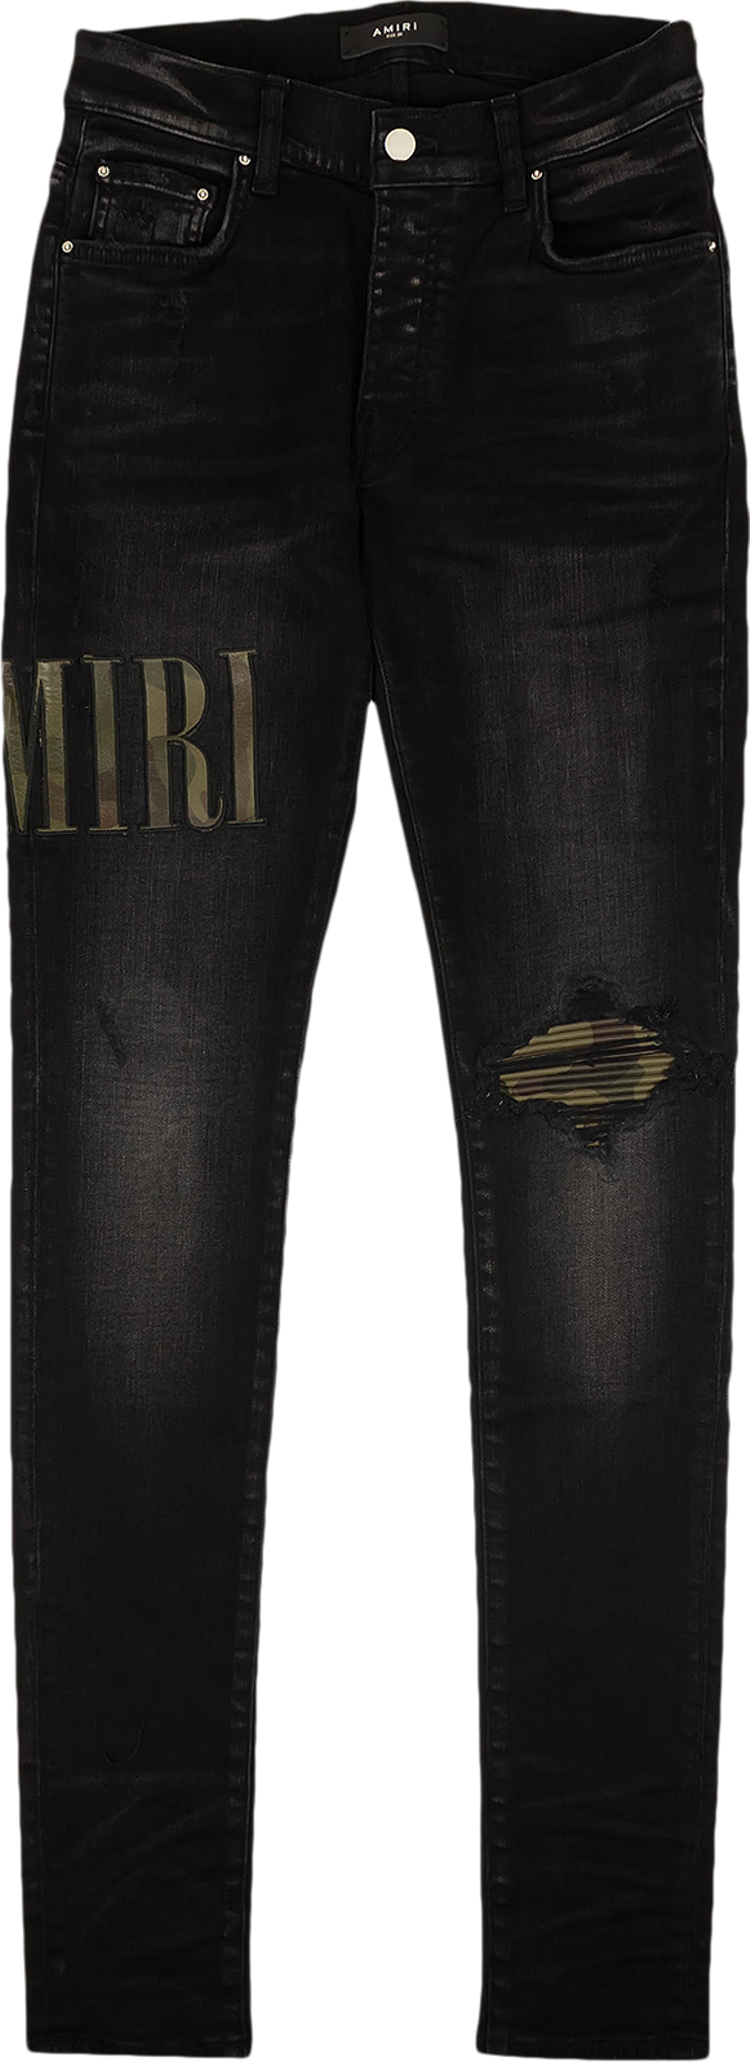 Buy Amiri Core Applique Jean 'Aged Black' - PF22MDS010 023 ...